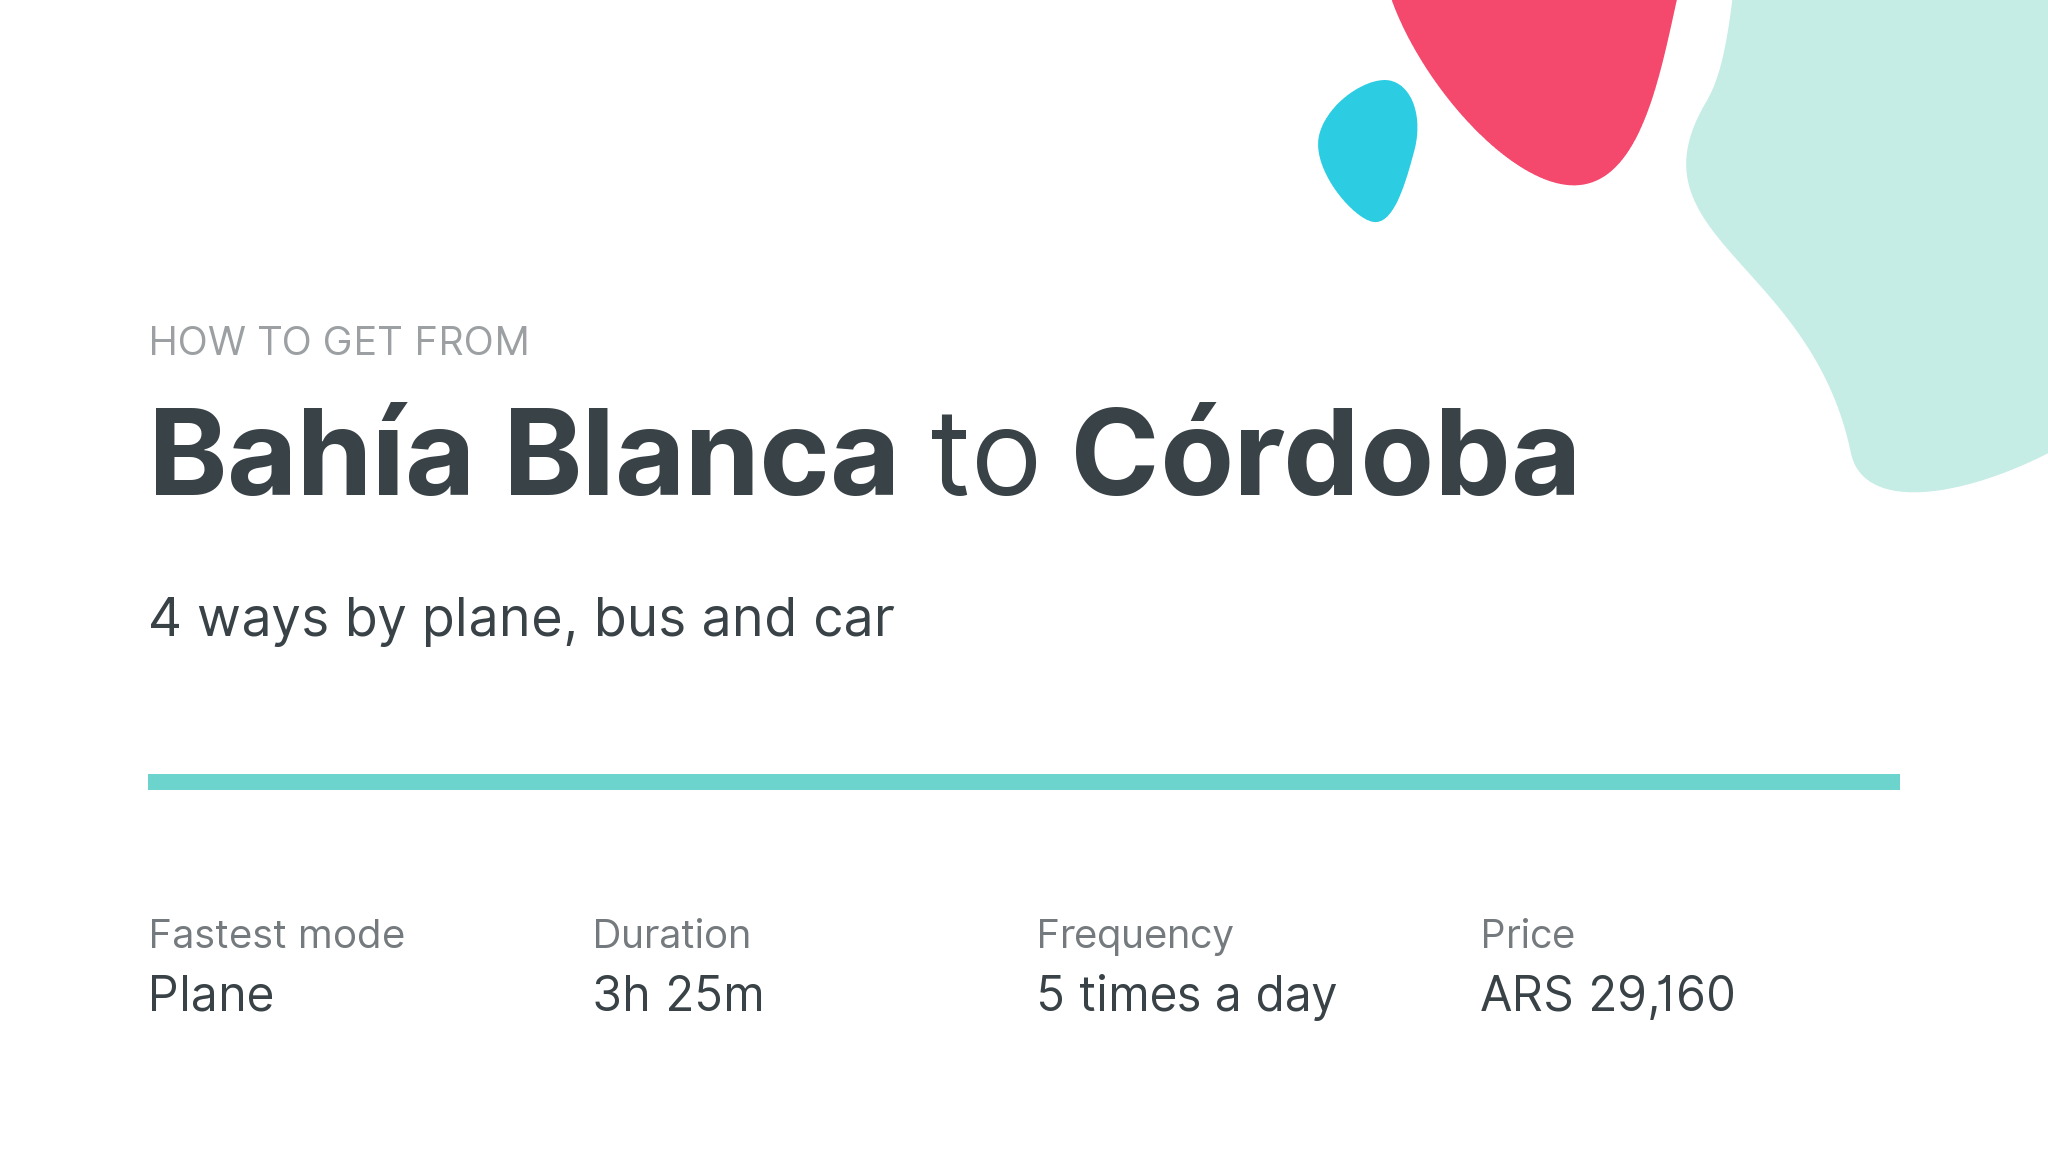 How do I get from Bahía Blanca to Córdoba